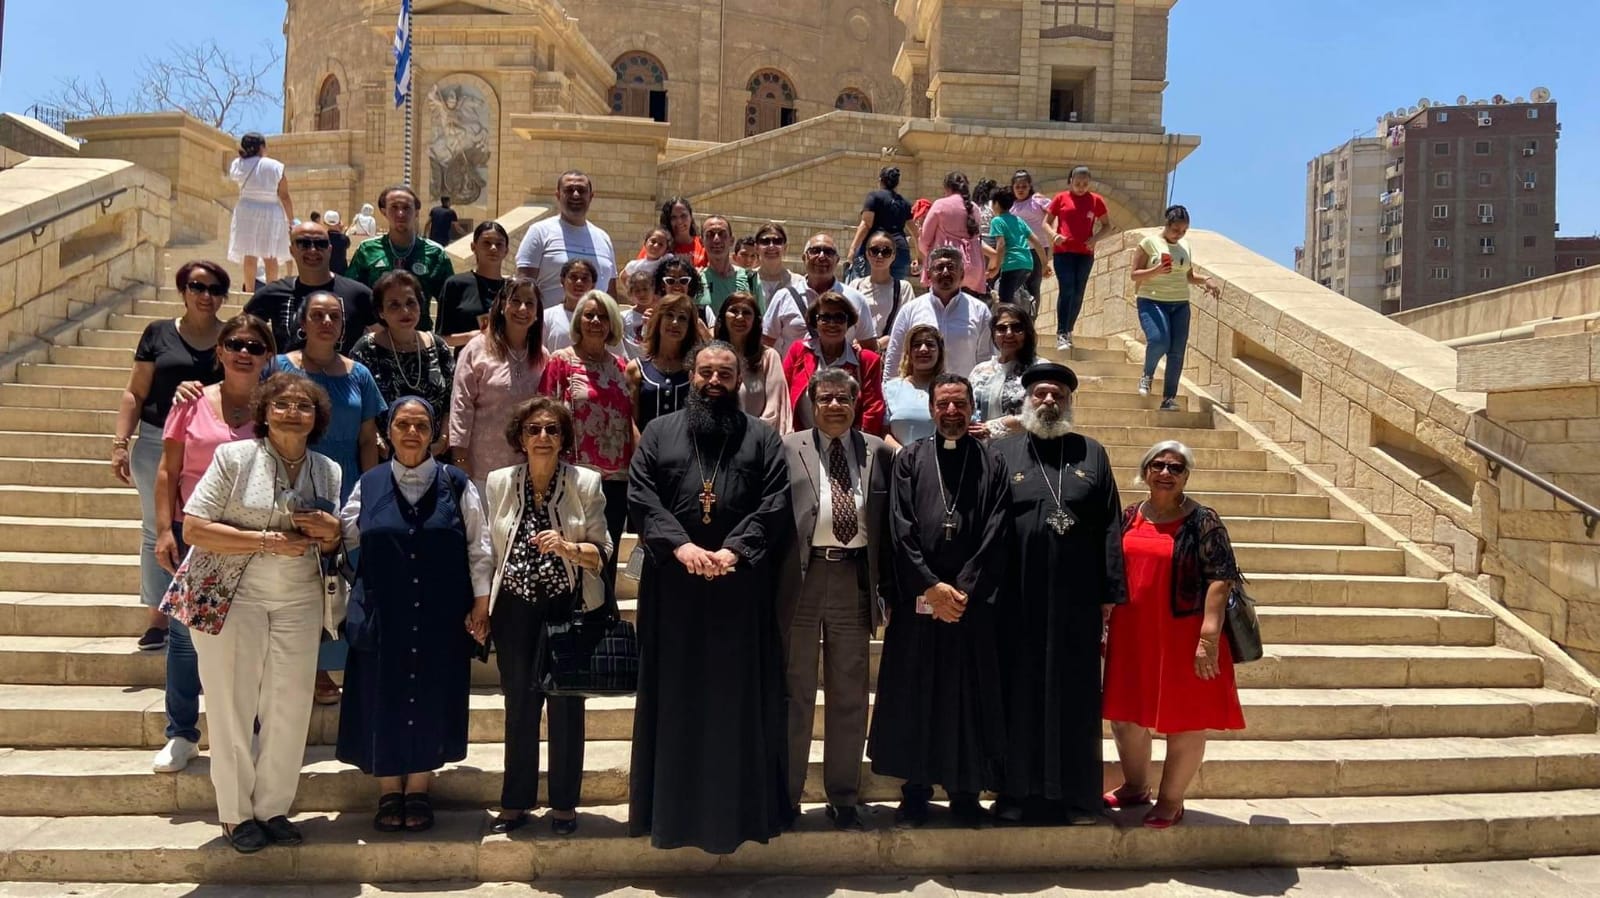 لجنة المرأة تُقيم مؤتمر في دير مار جرجس البطريركي للروم الأرثوذكس